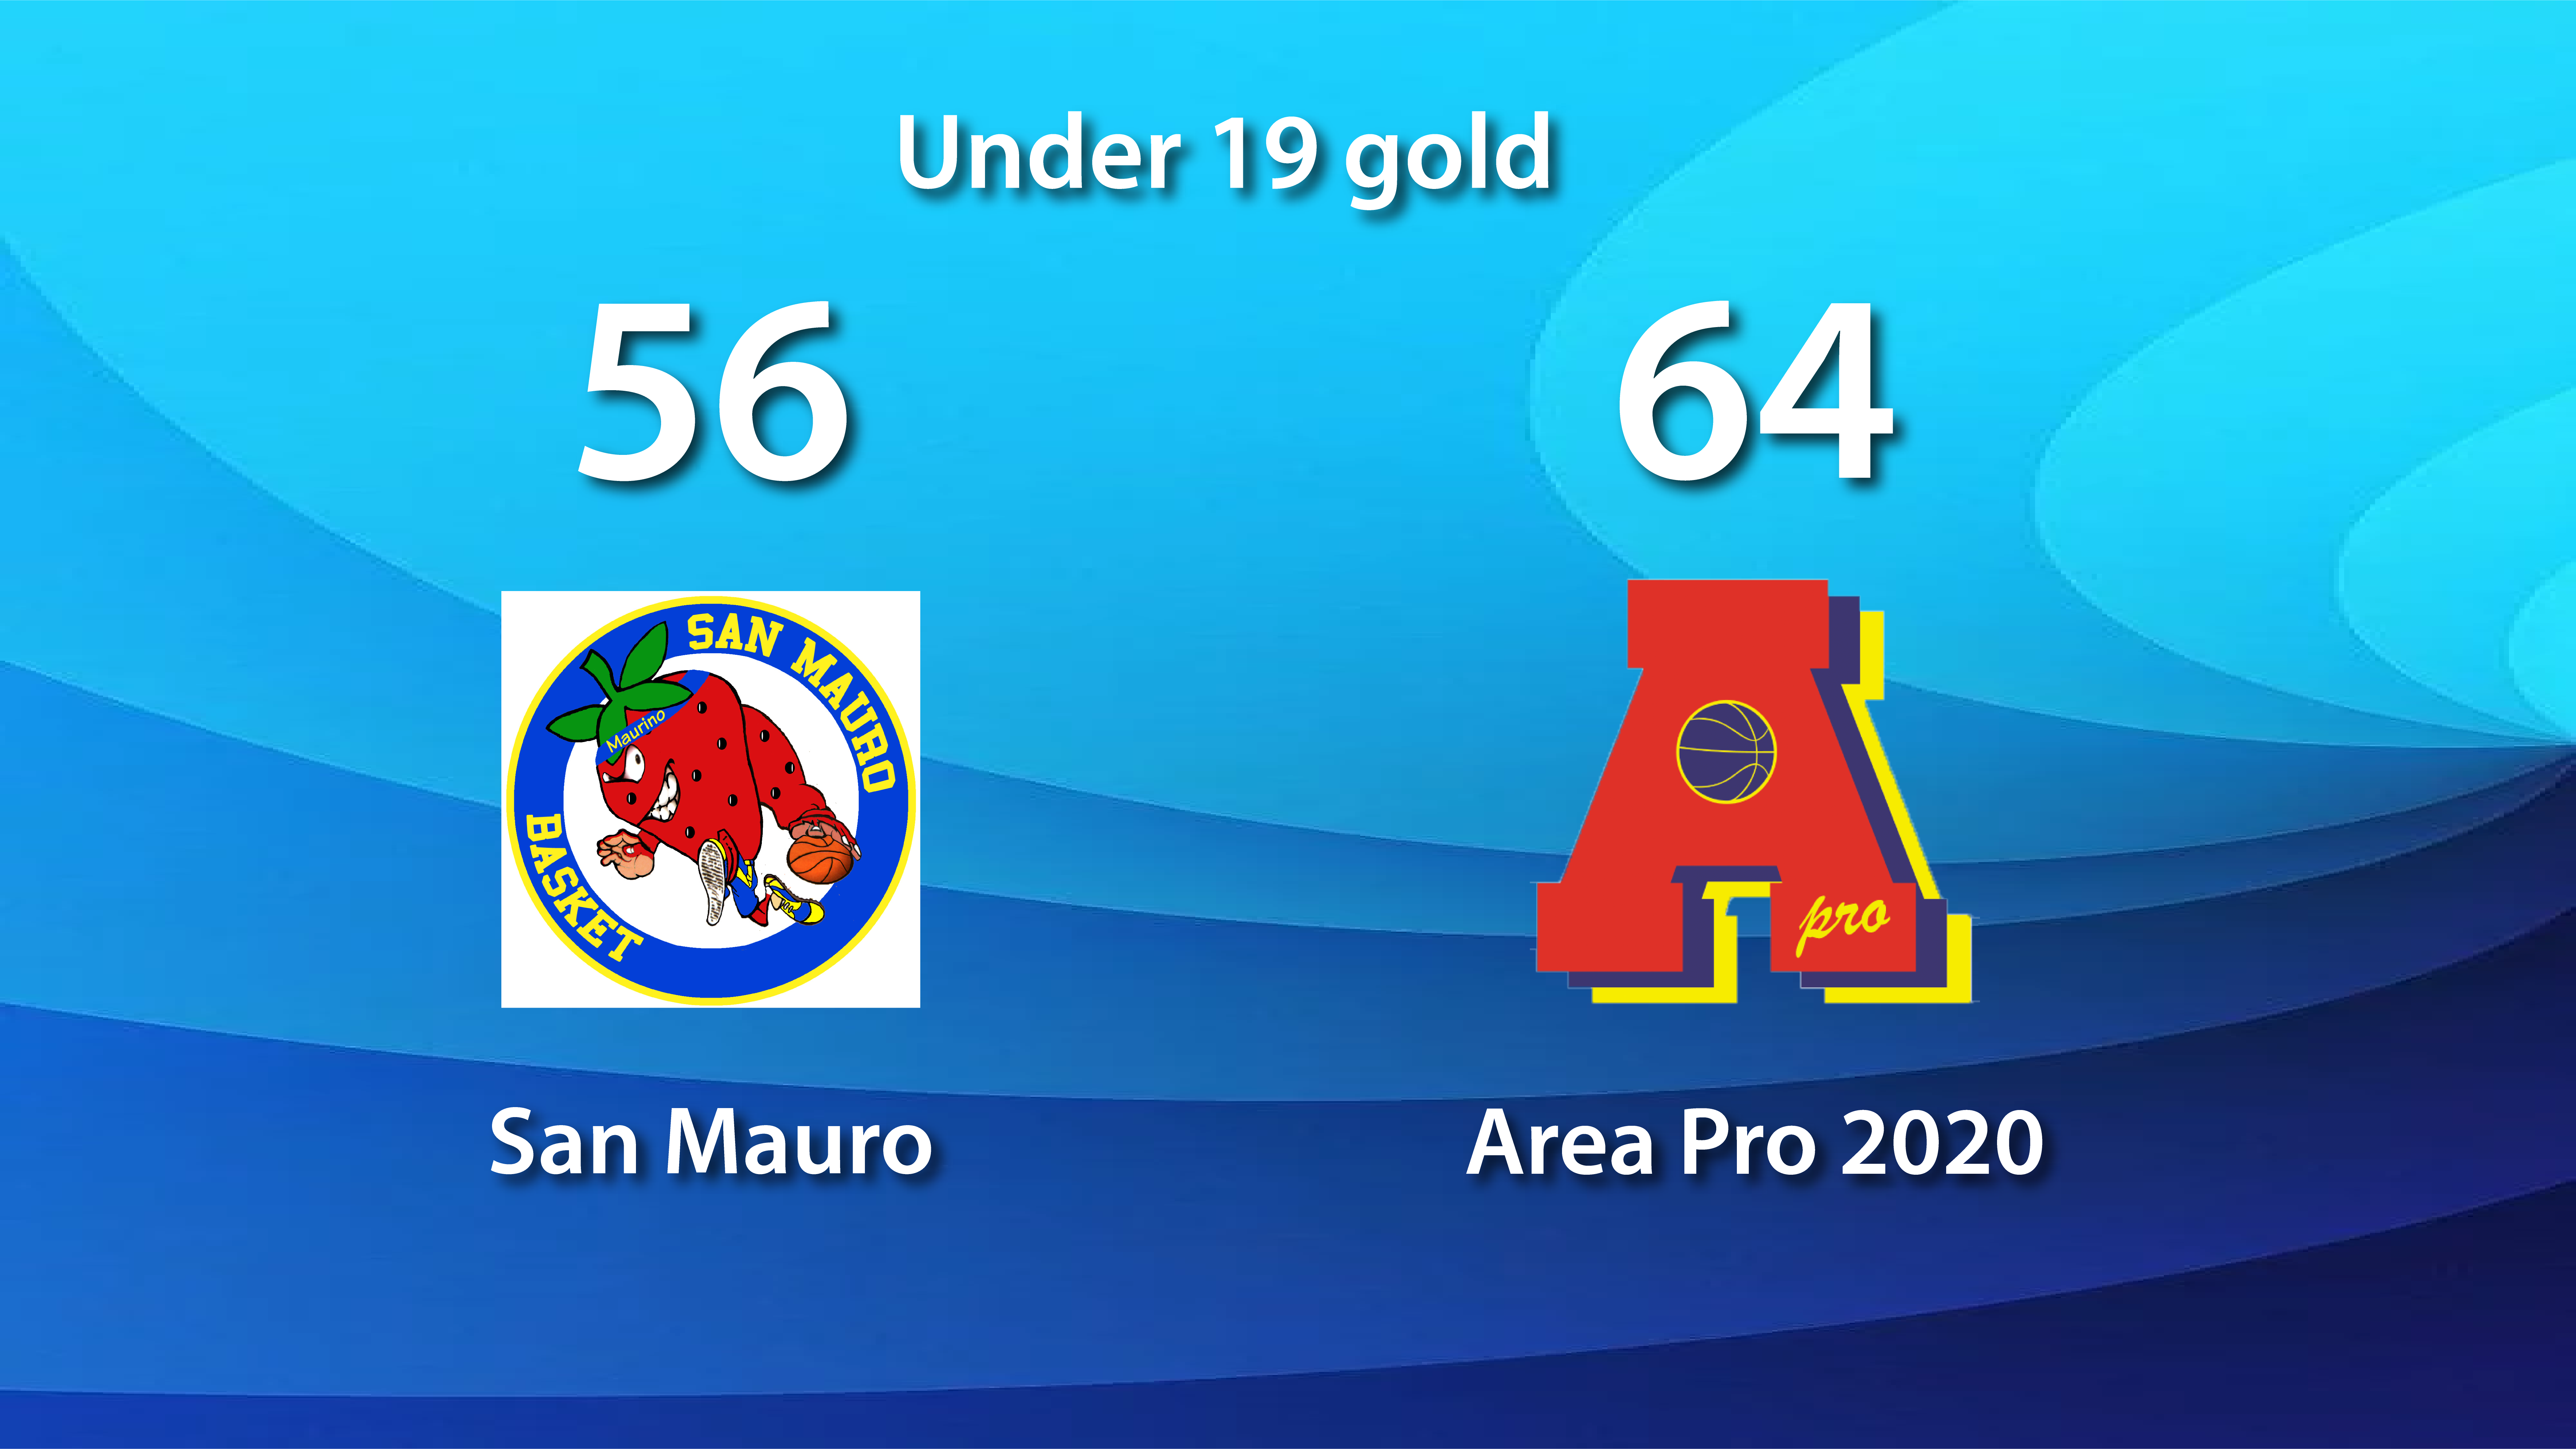 Under 19 gold: AP2020 vince con San Mauro e conquista la fase TOP